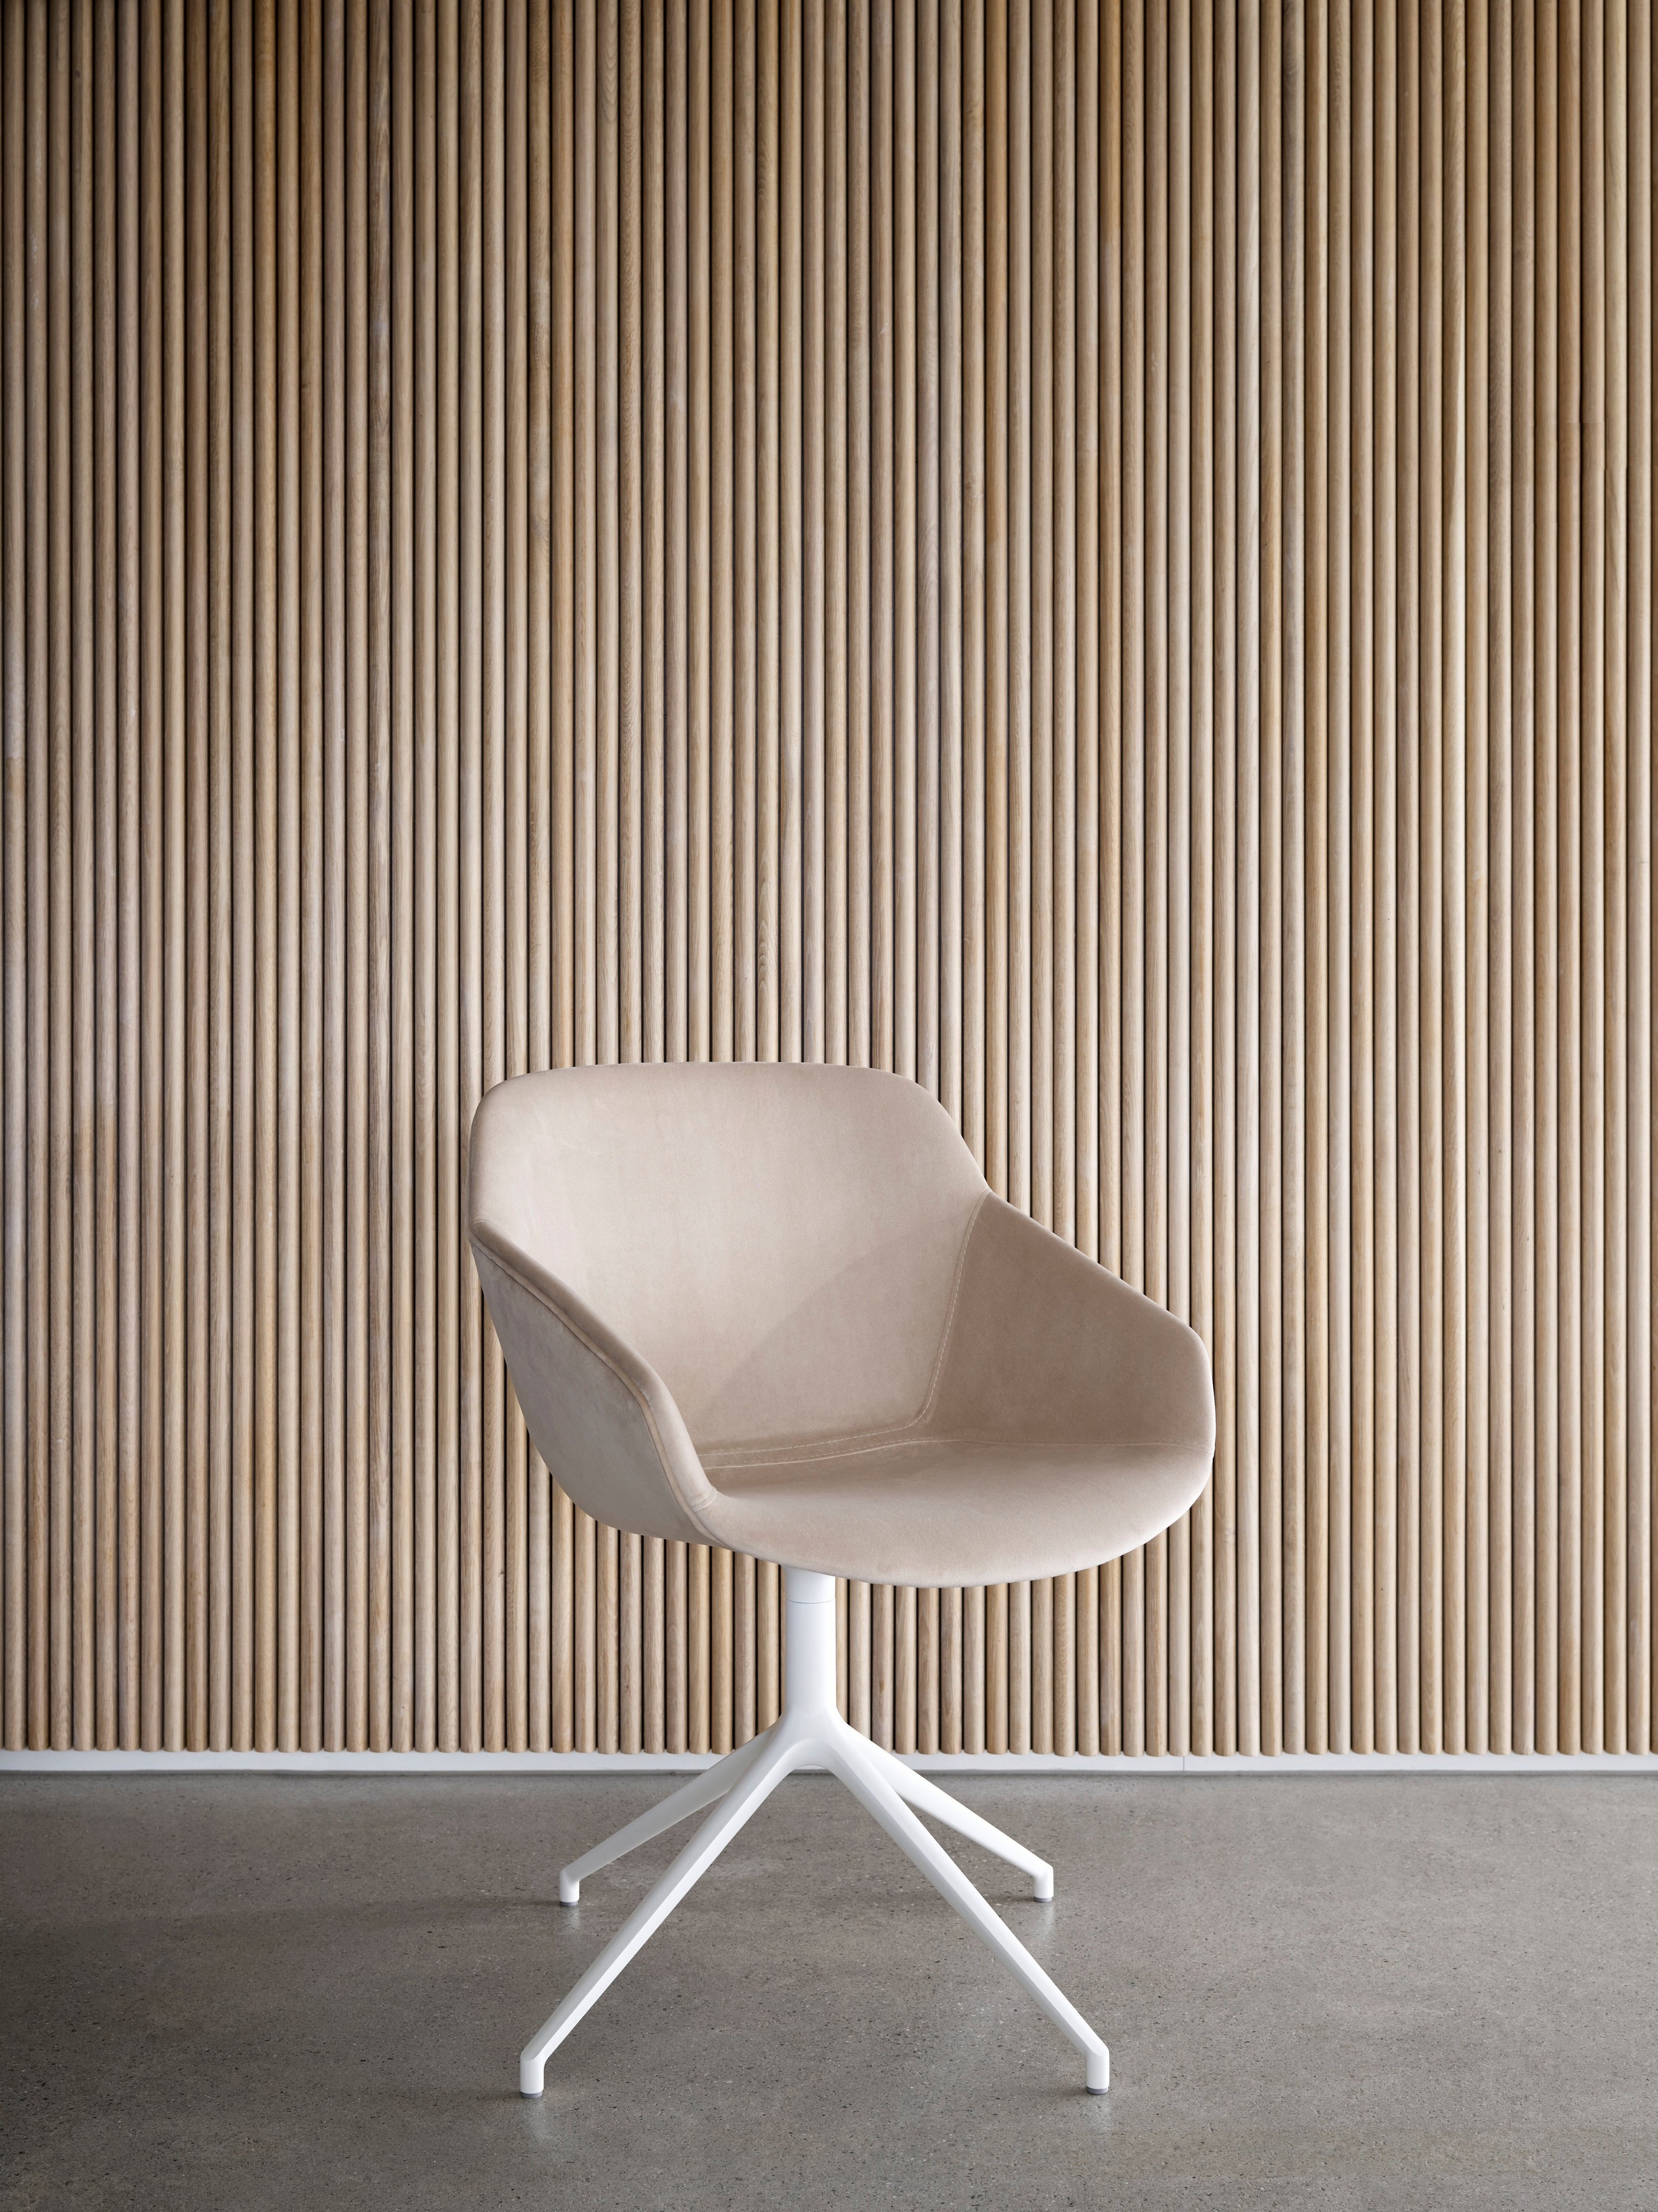 Béžová stolička s bielou podnožou pri vertikálnej drevenej lamelovej stene.